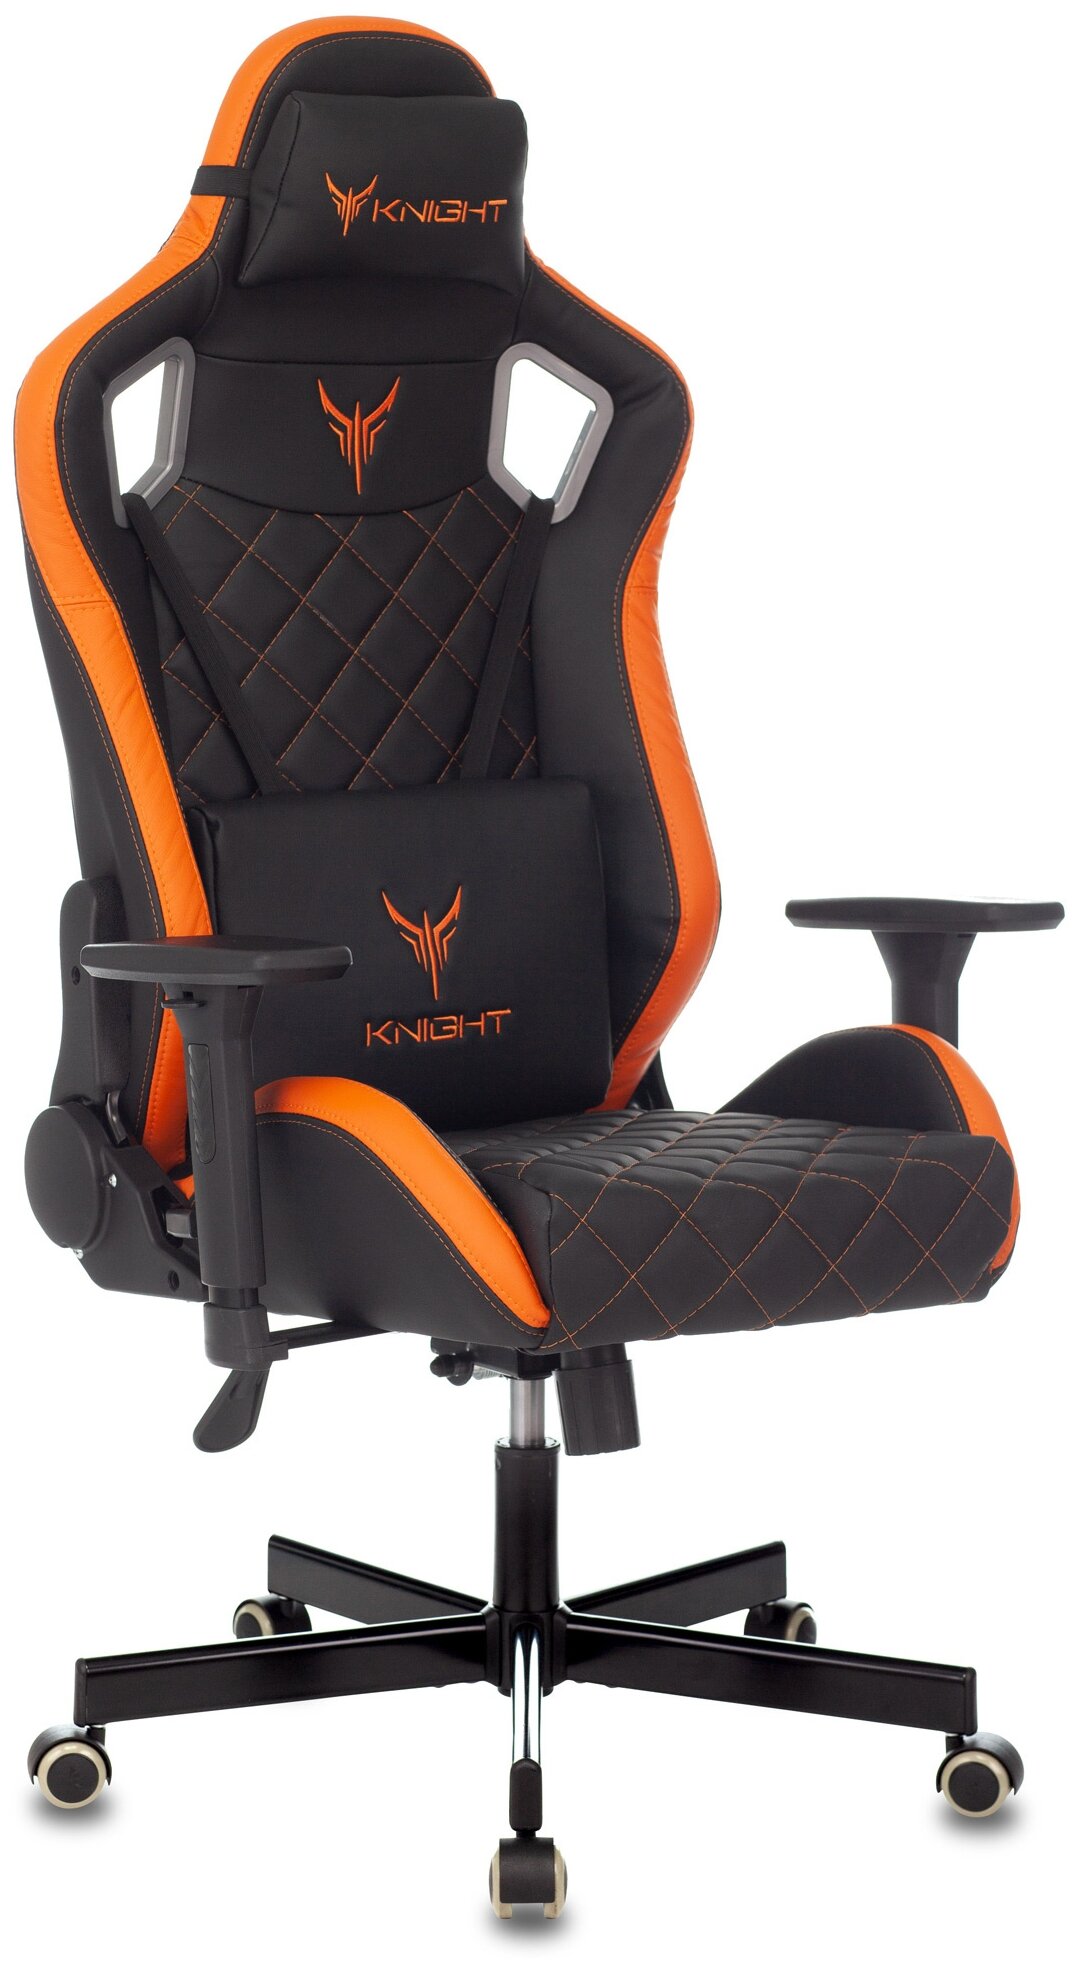 Компьютерное кресло Бюрократ Knight Outrider игровое — купить по выгодной цене на Яндекс.Маркете